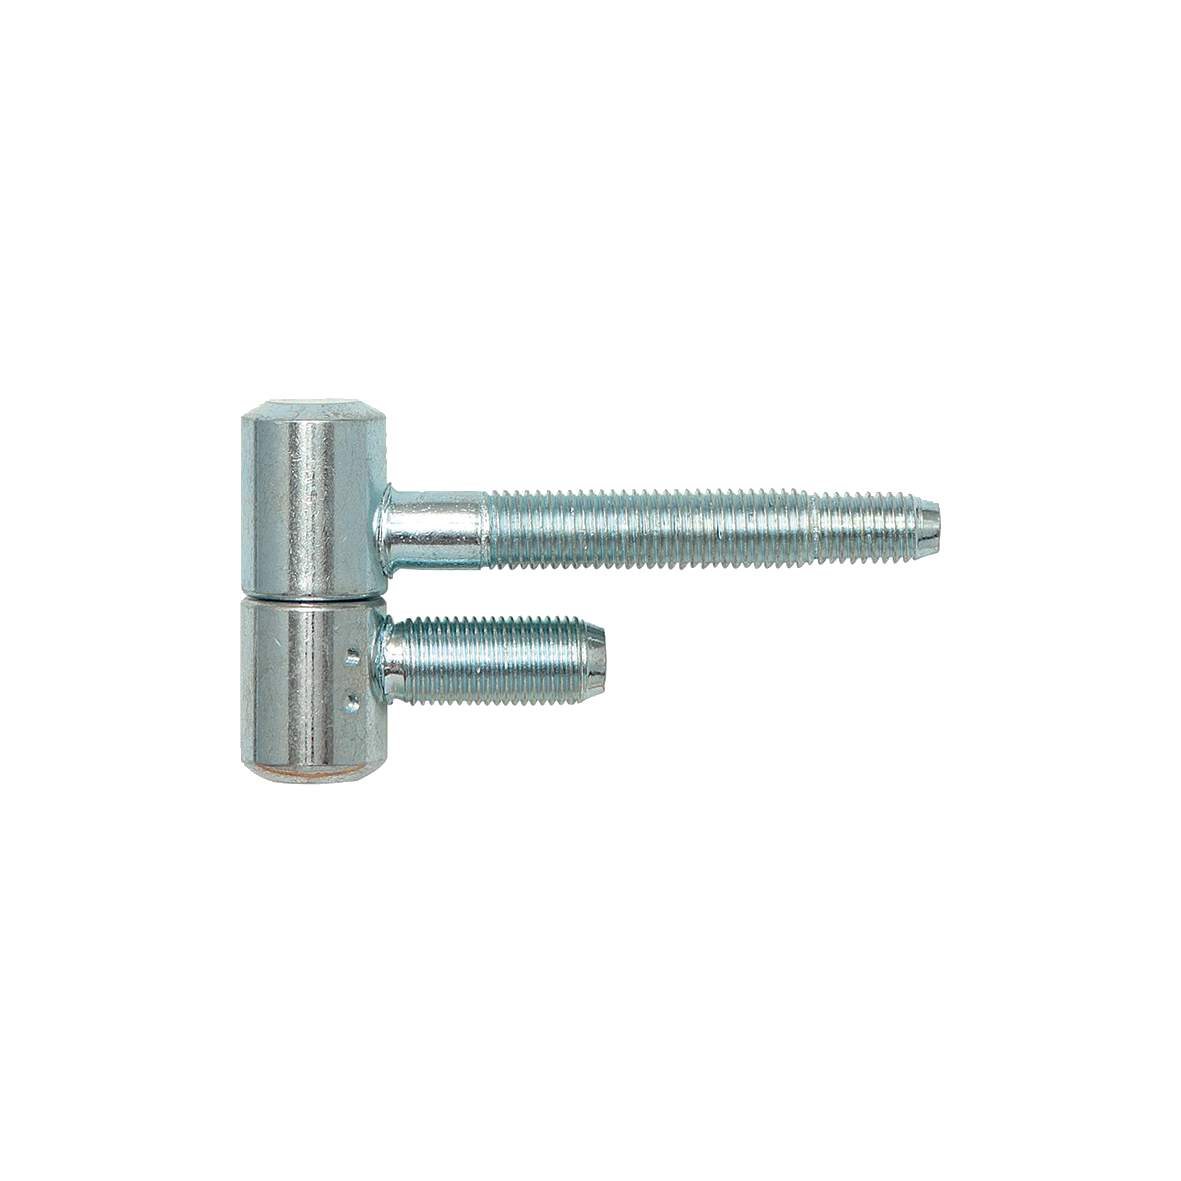 1197314 - Einbohrband Zylinder Stahl verz.16mm,f.Stahlzargen,2erSB